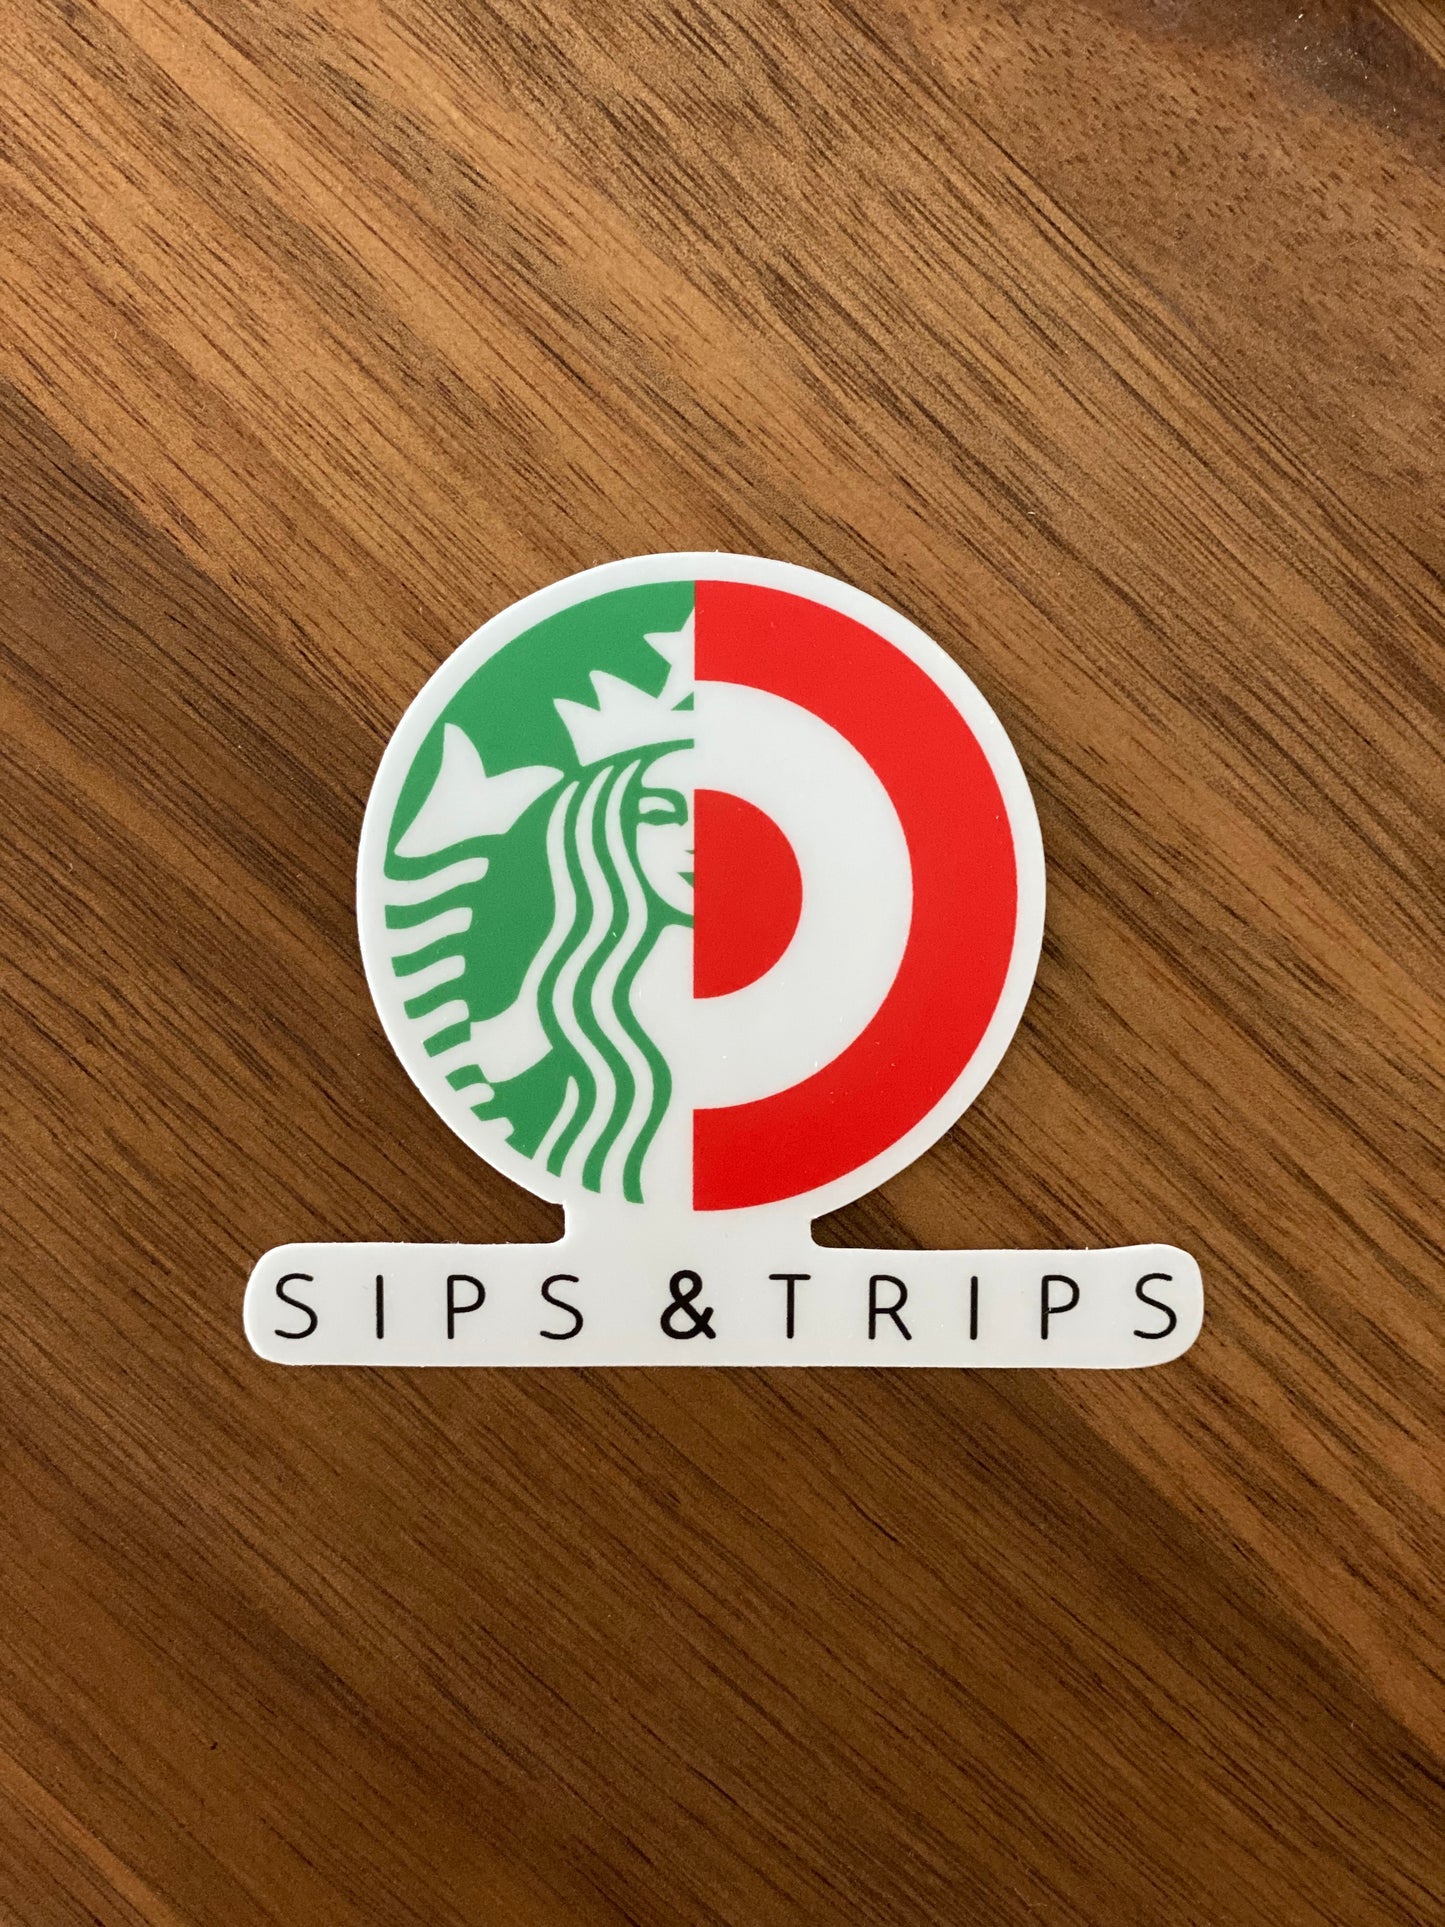 Sips & Trips Sticker